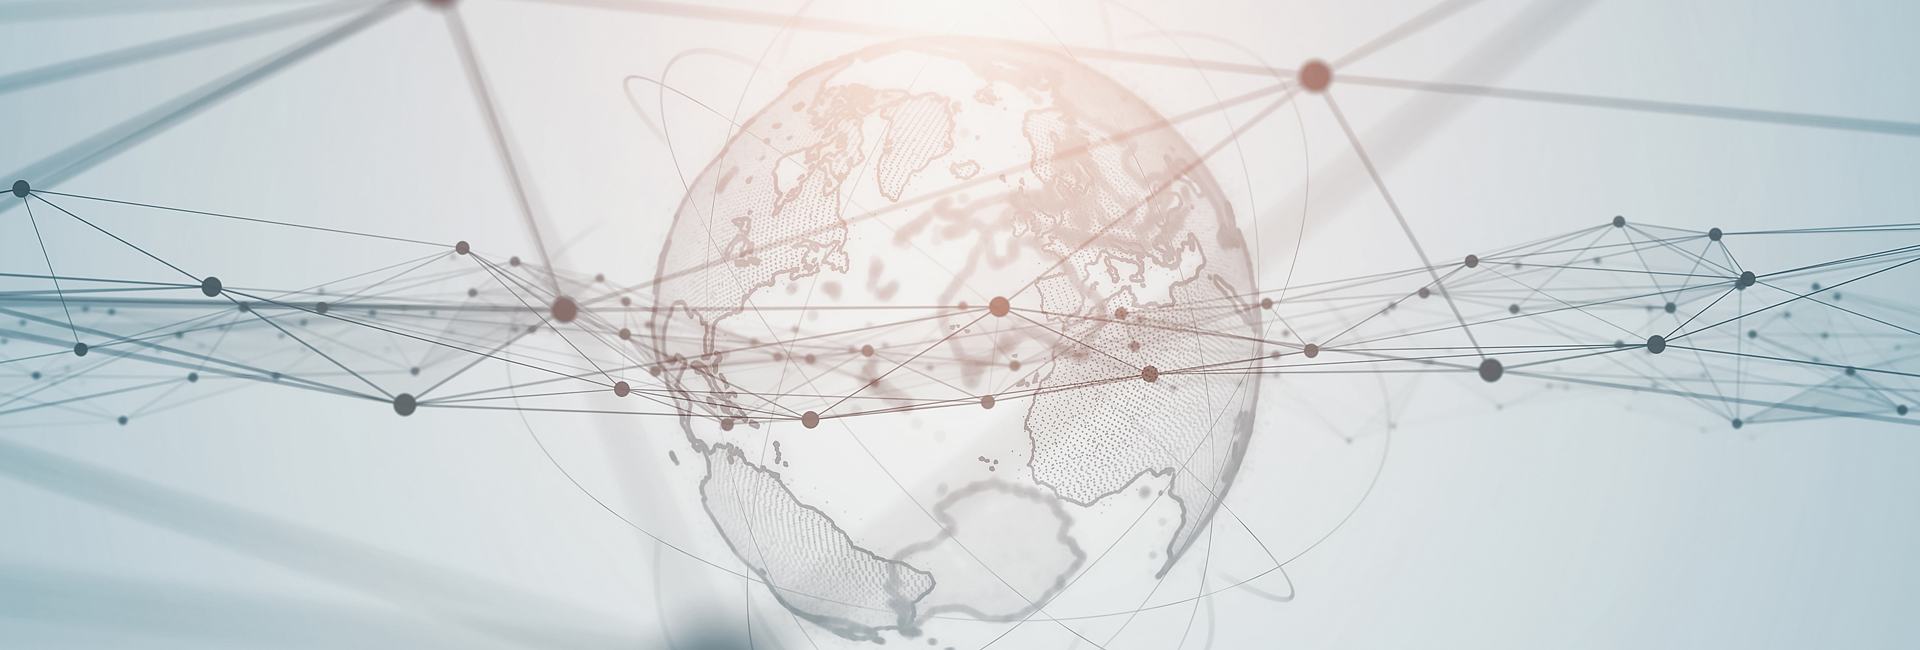 Internationale Beratungstage: Globale Vernetzung, Weltkugel mit Linien und Verbindungen